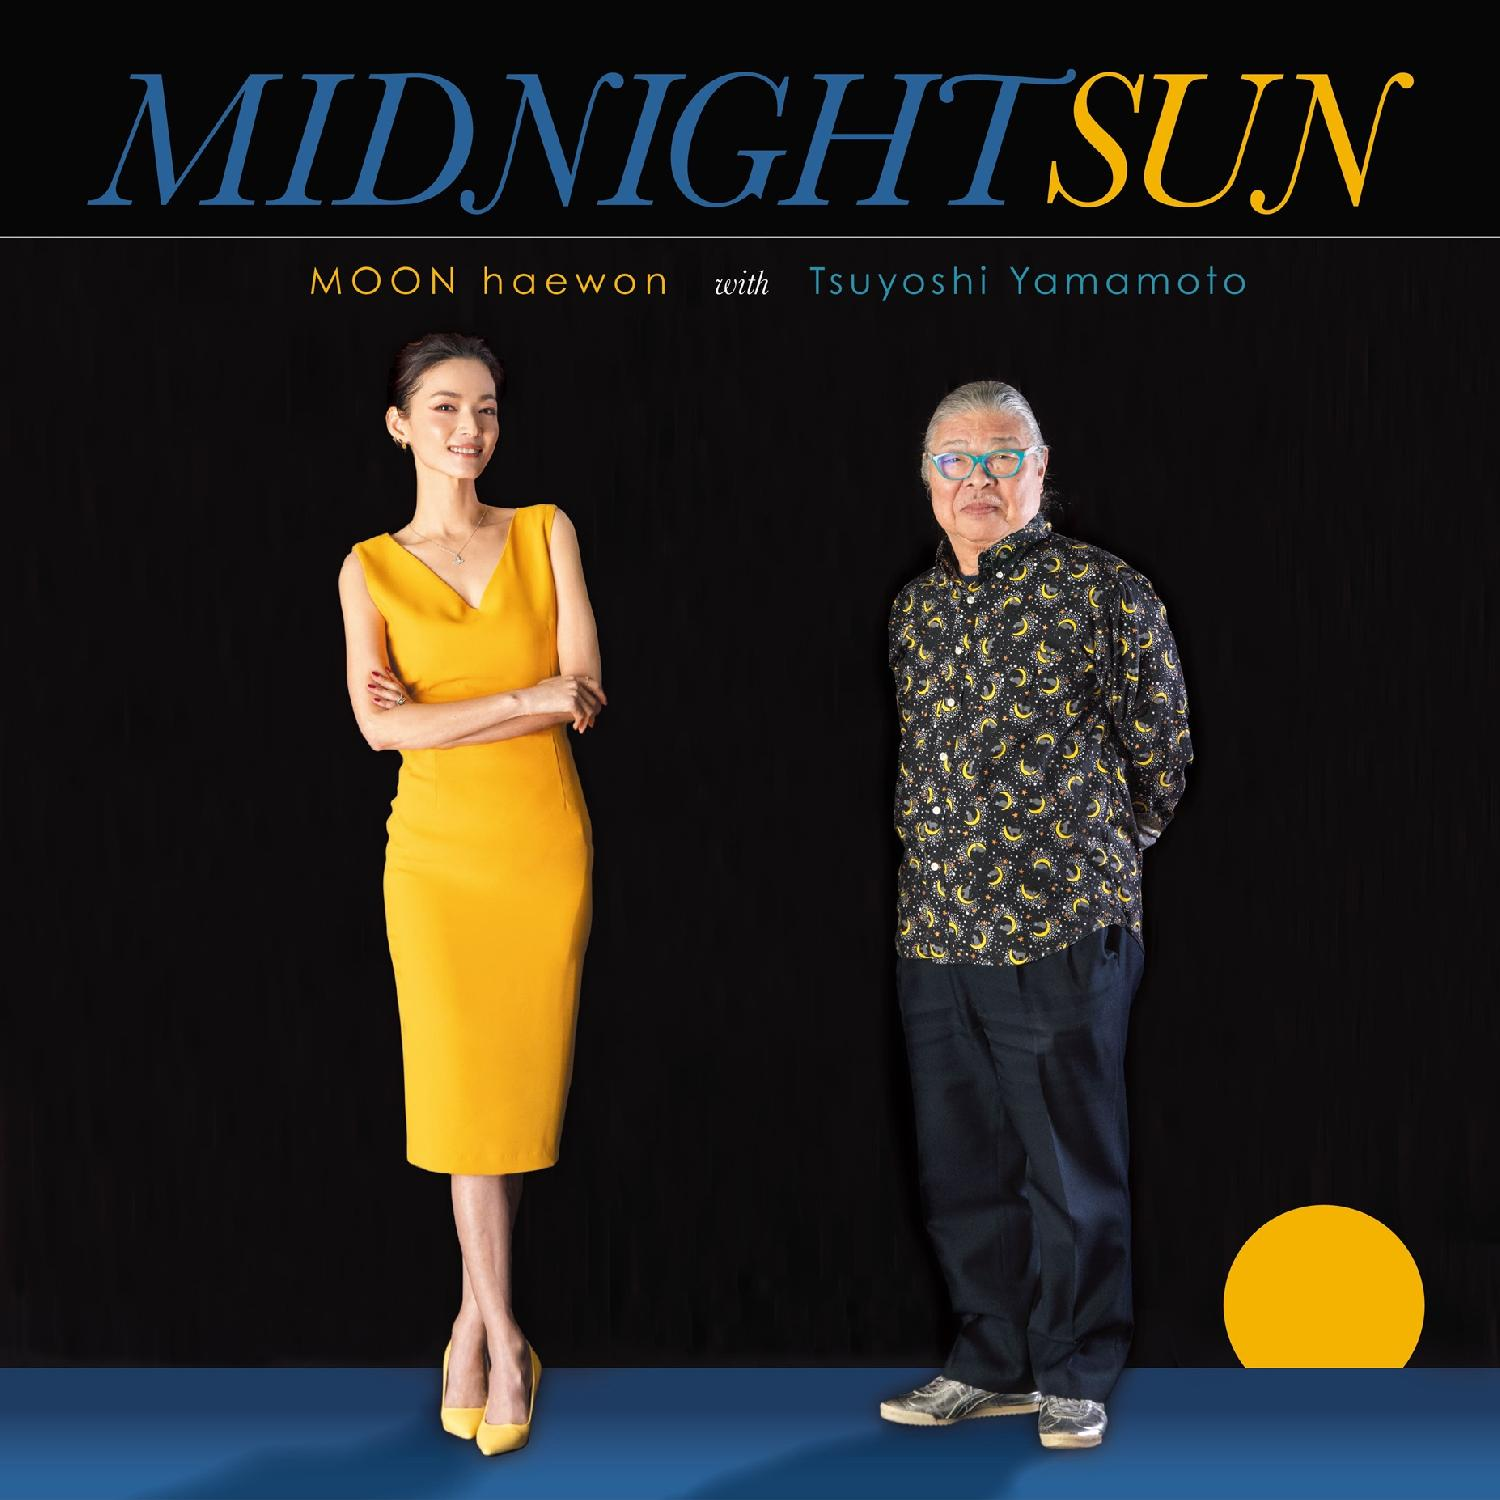 예약판매[PRE-ORDER] Moon with Tsuyoshi Yamamoto (문혜원 with 츠요시 야마모토) - Midnight Sun [LP]